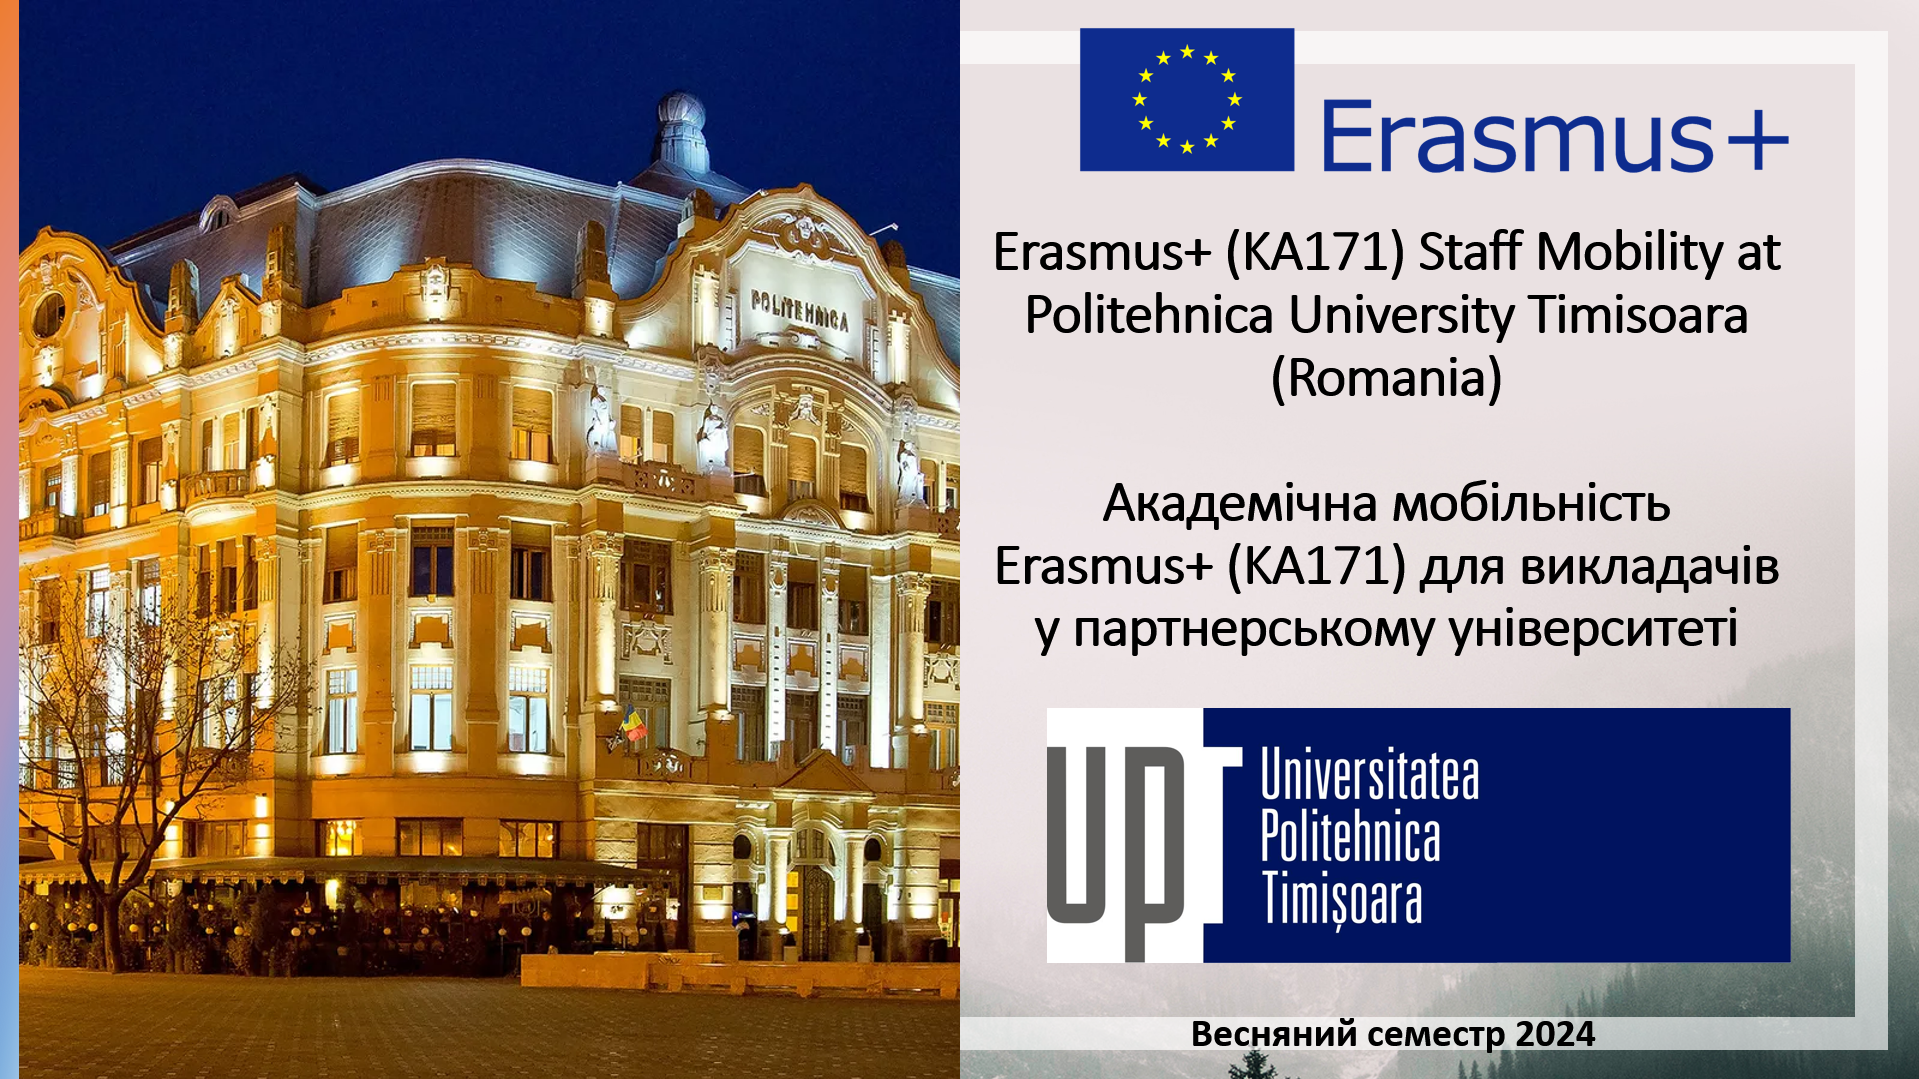 Румунський університет Polytechnic University Timisoara запрошує  викладачів взяти участь у програмі академічної мобільності Erasmus+ у весняному семестрі 2024 року